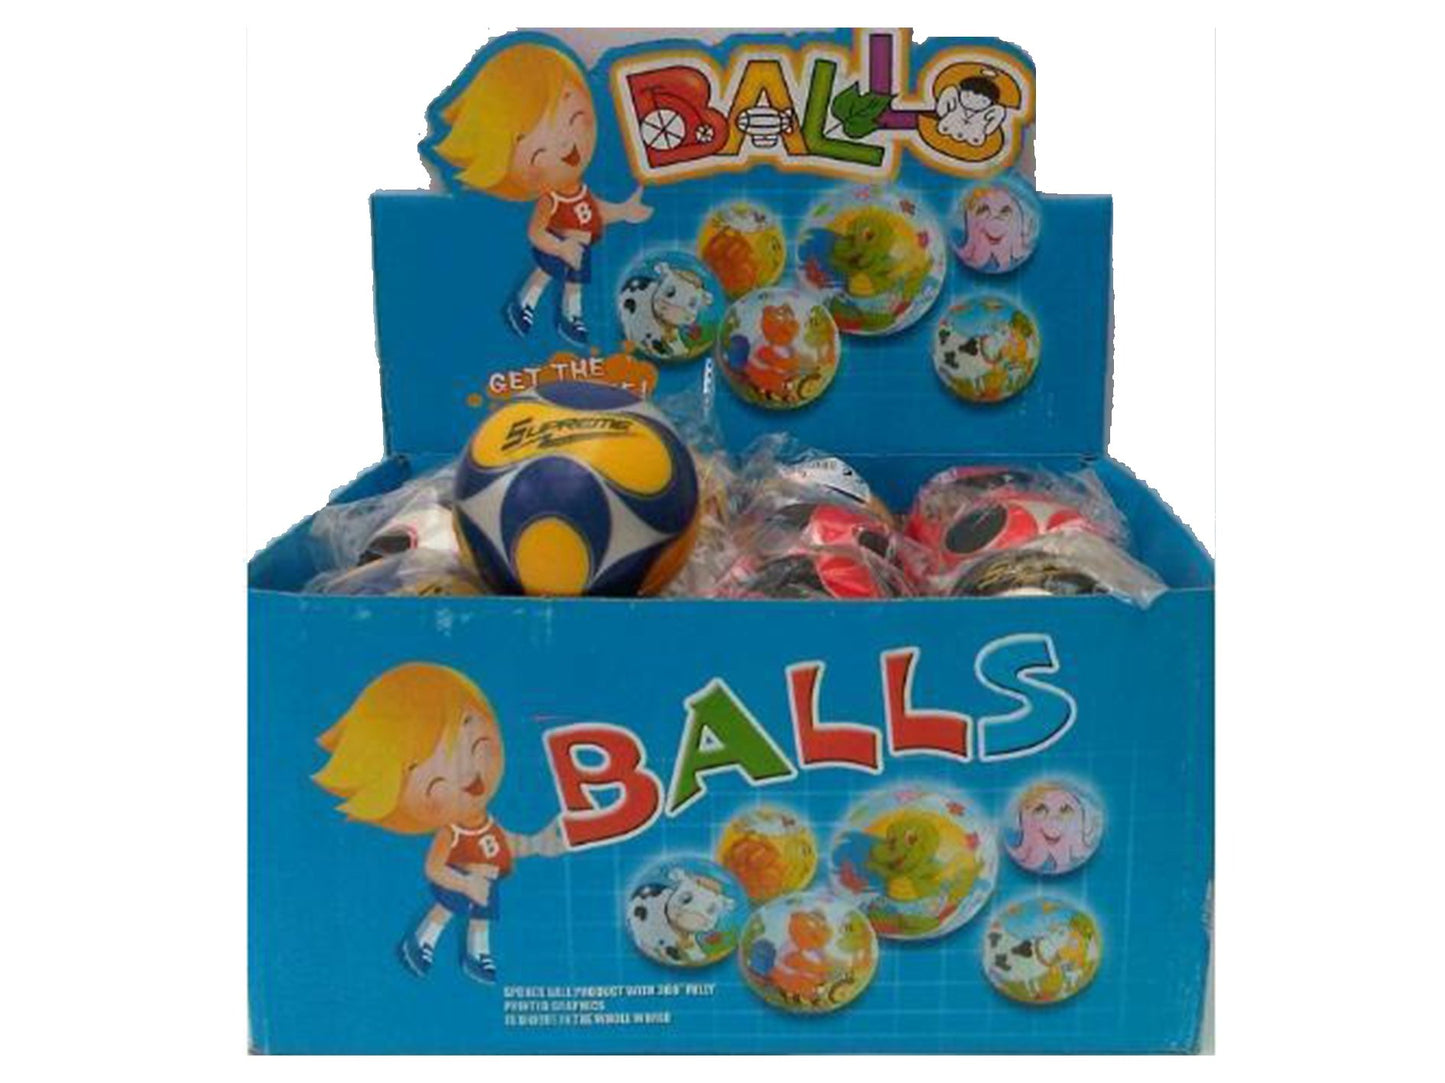 Soccer Sponge 3" Ball Assorted - VIR Wholesale